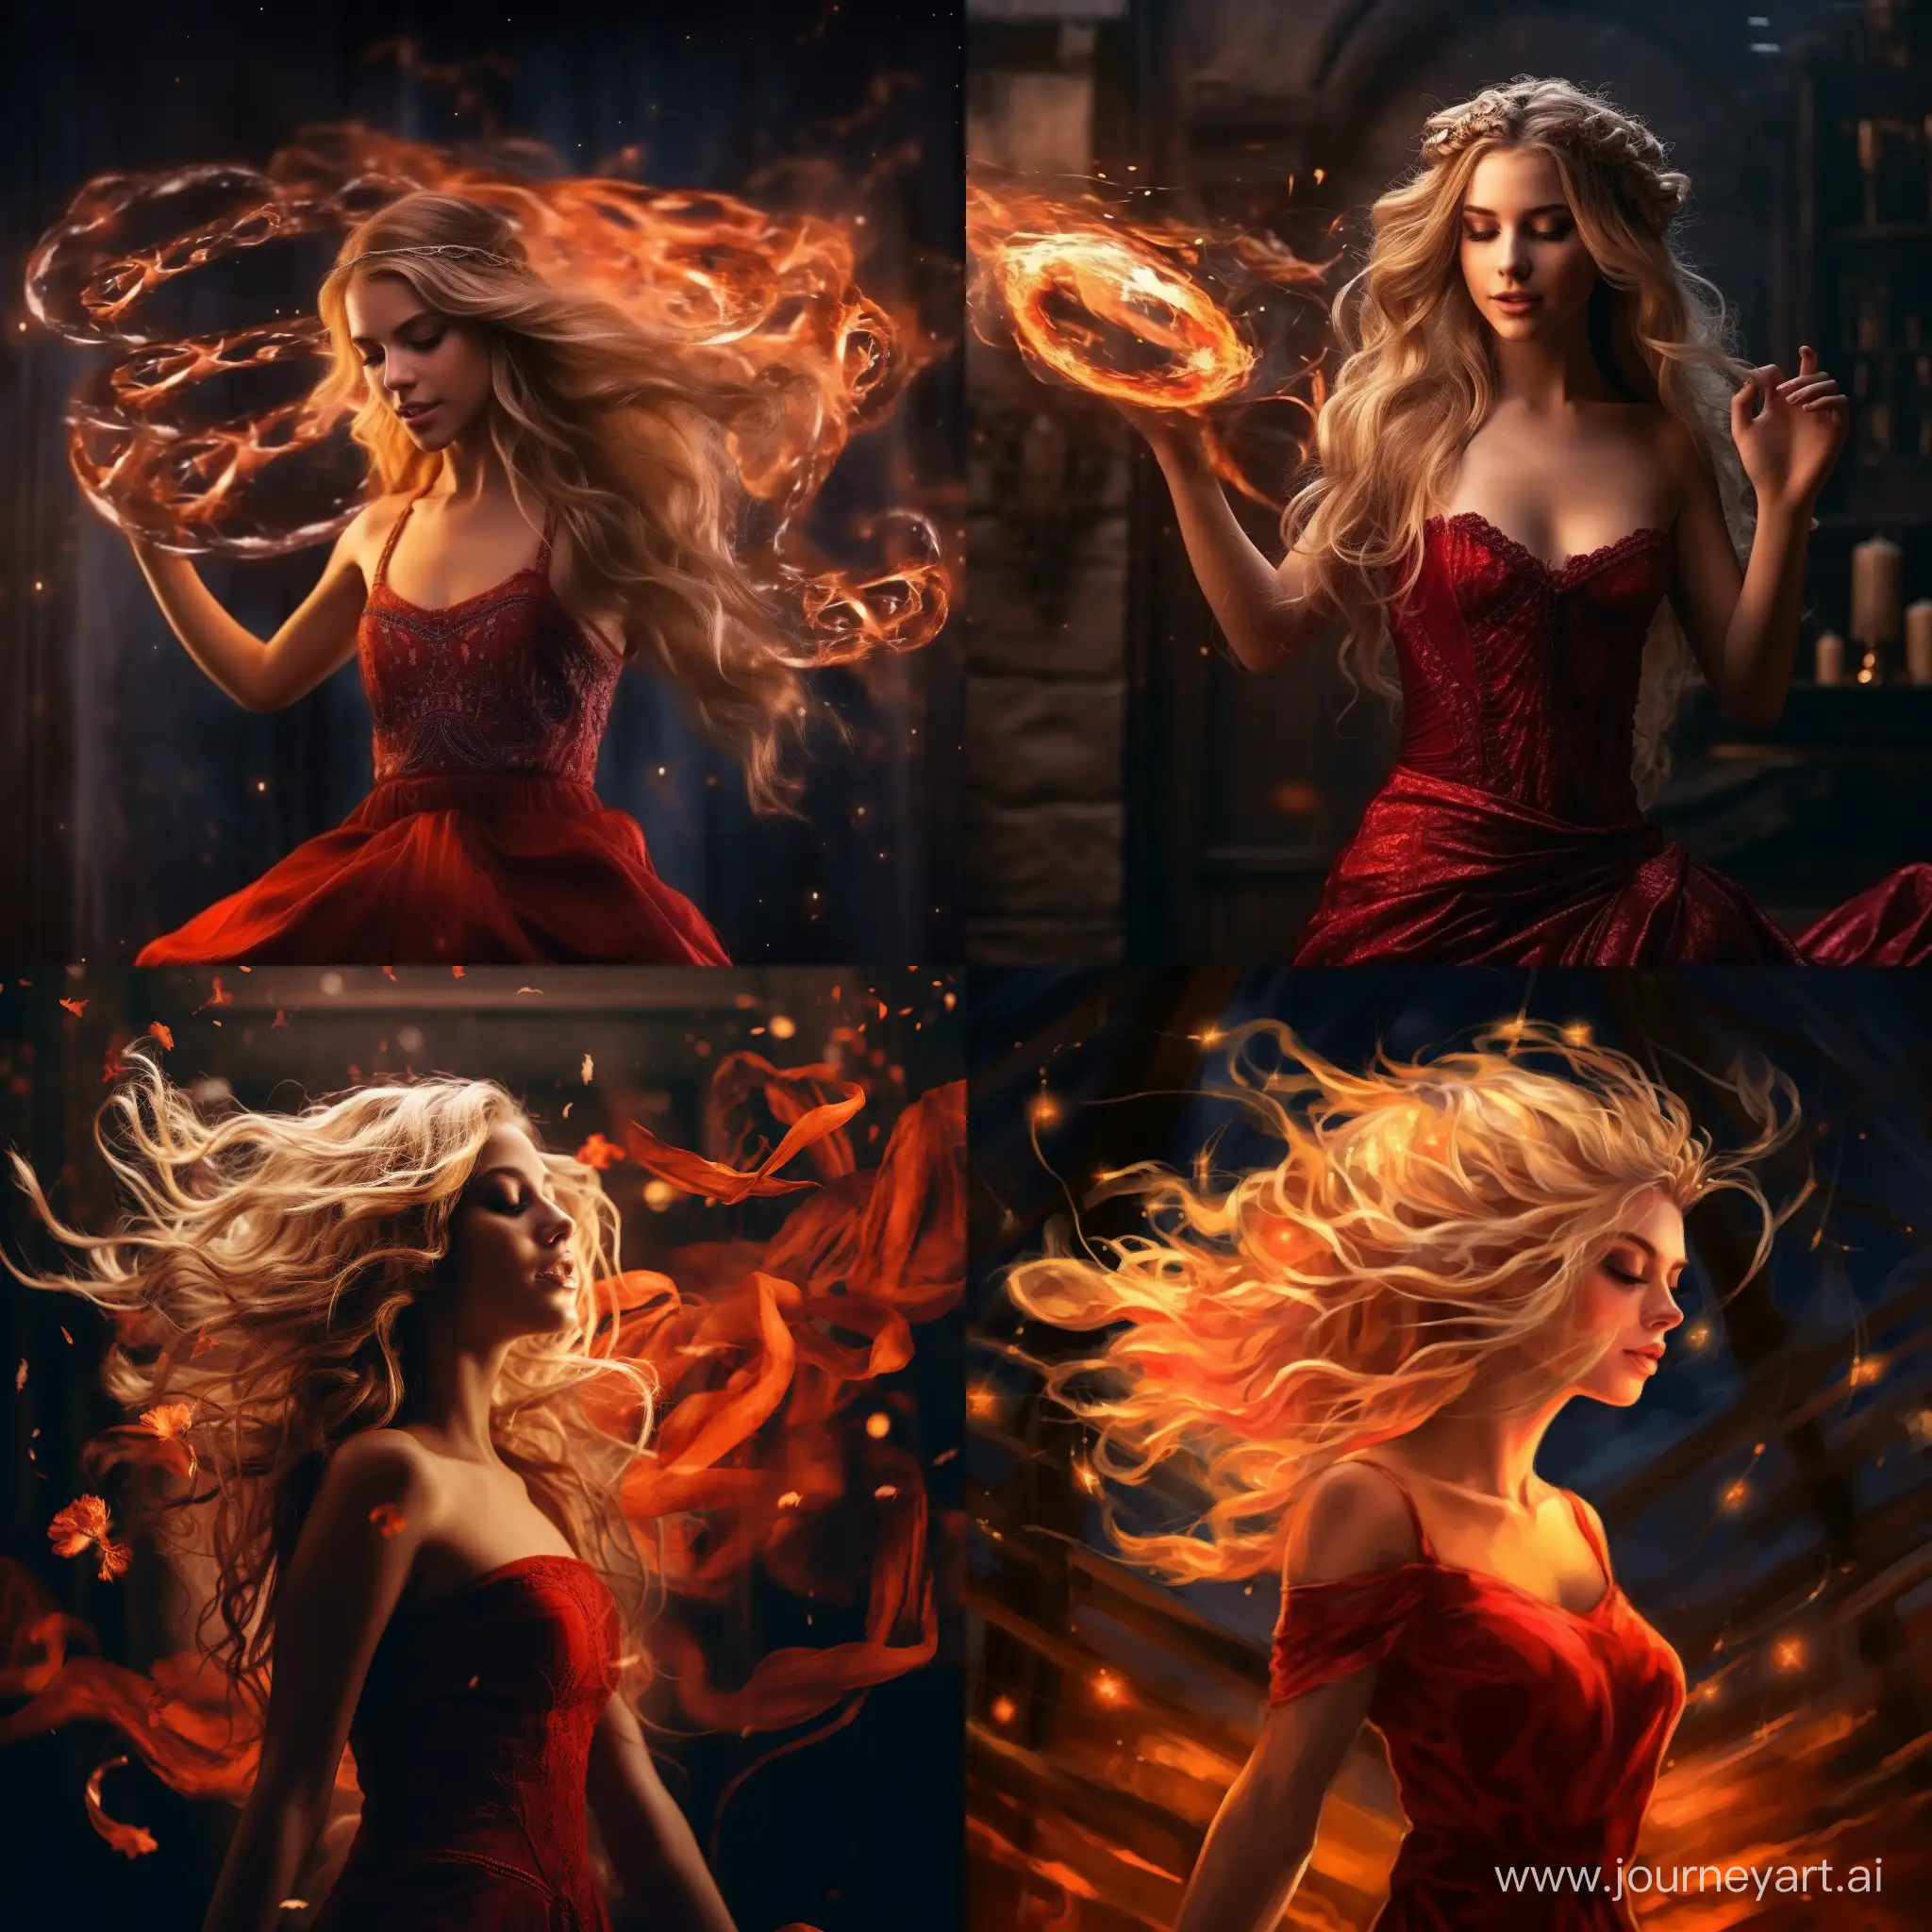 Девушка танцует на огне  с блондинистыми волосами в красном платье, короной золотой на голове